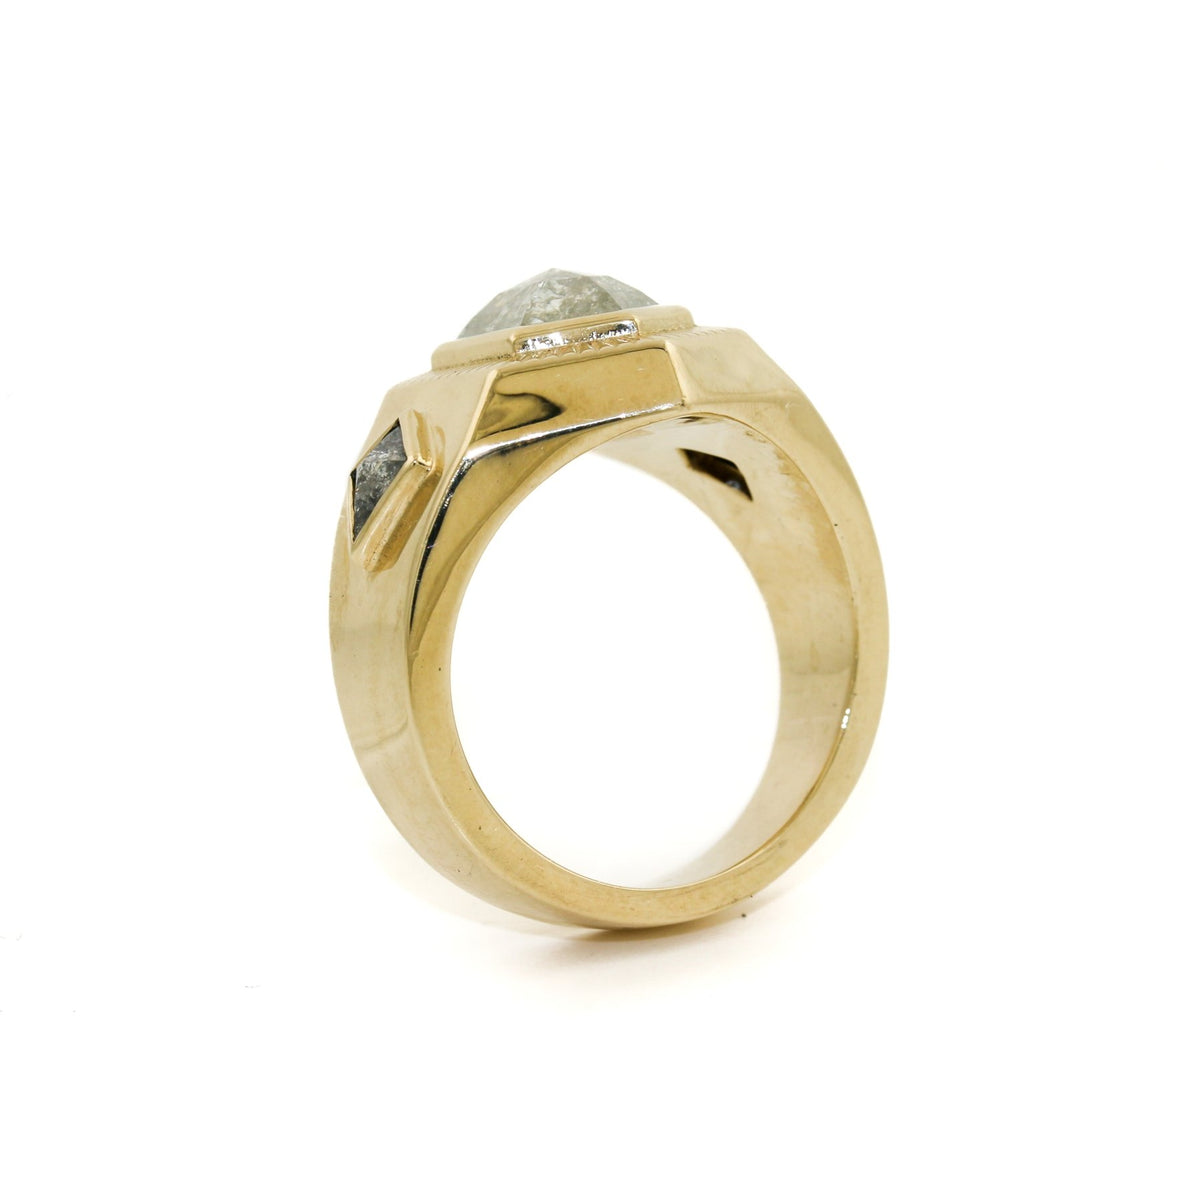 Art Deco Mans Ring x Salt & Pepper Diamond - Kingdom Jewelry